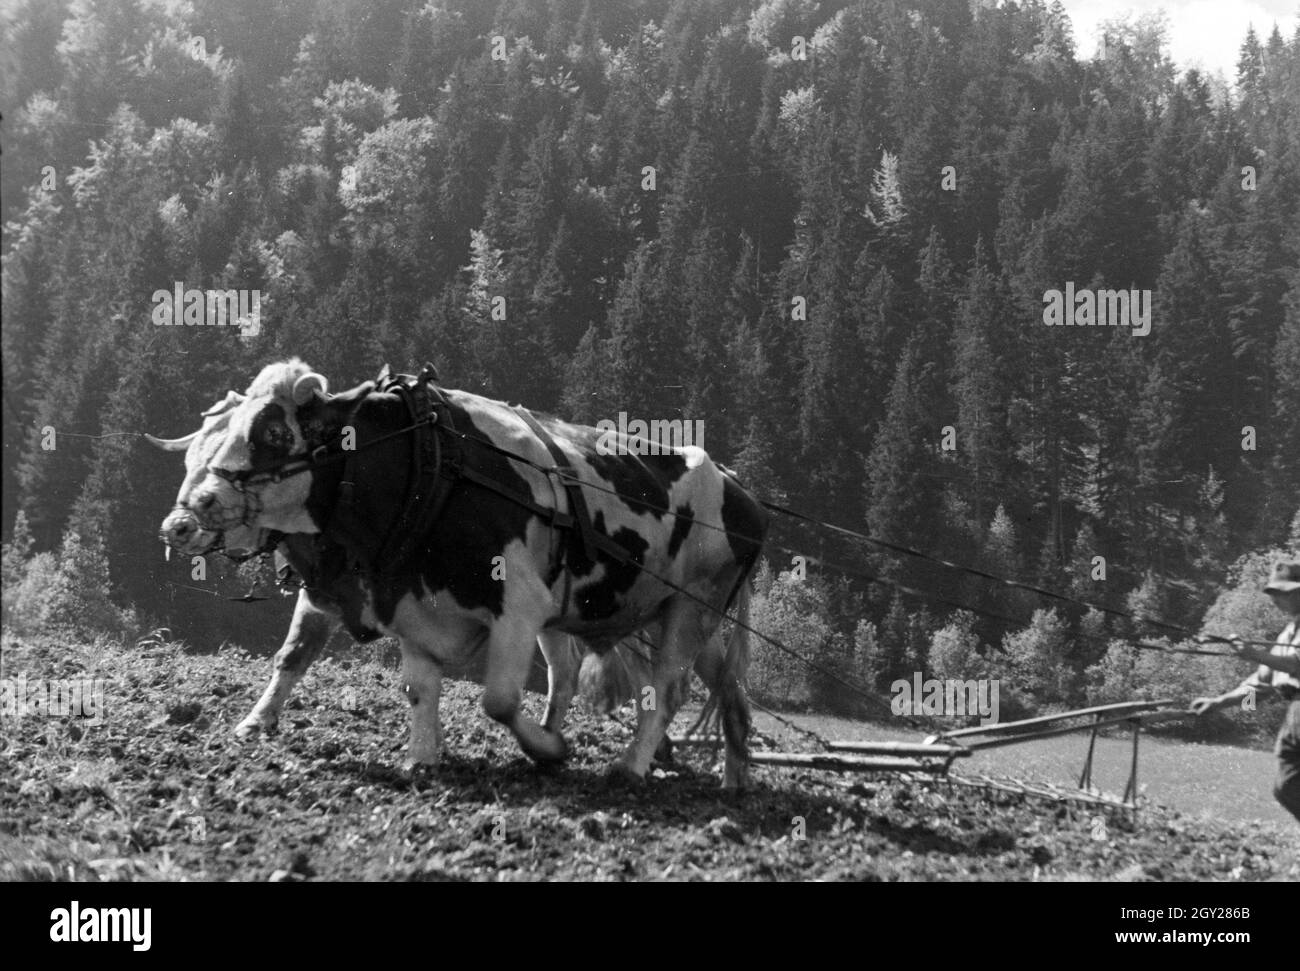 Ein Bauer mit einem Ochsengespann bei St. Märgen im Südschwarzwald, Deutschland 1930er Jahre. A farmer with a ox-drawn cart near St. Märgen in the Southern Black Forest, Germany 1930s. Stock Photo